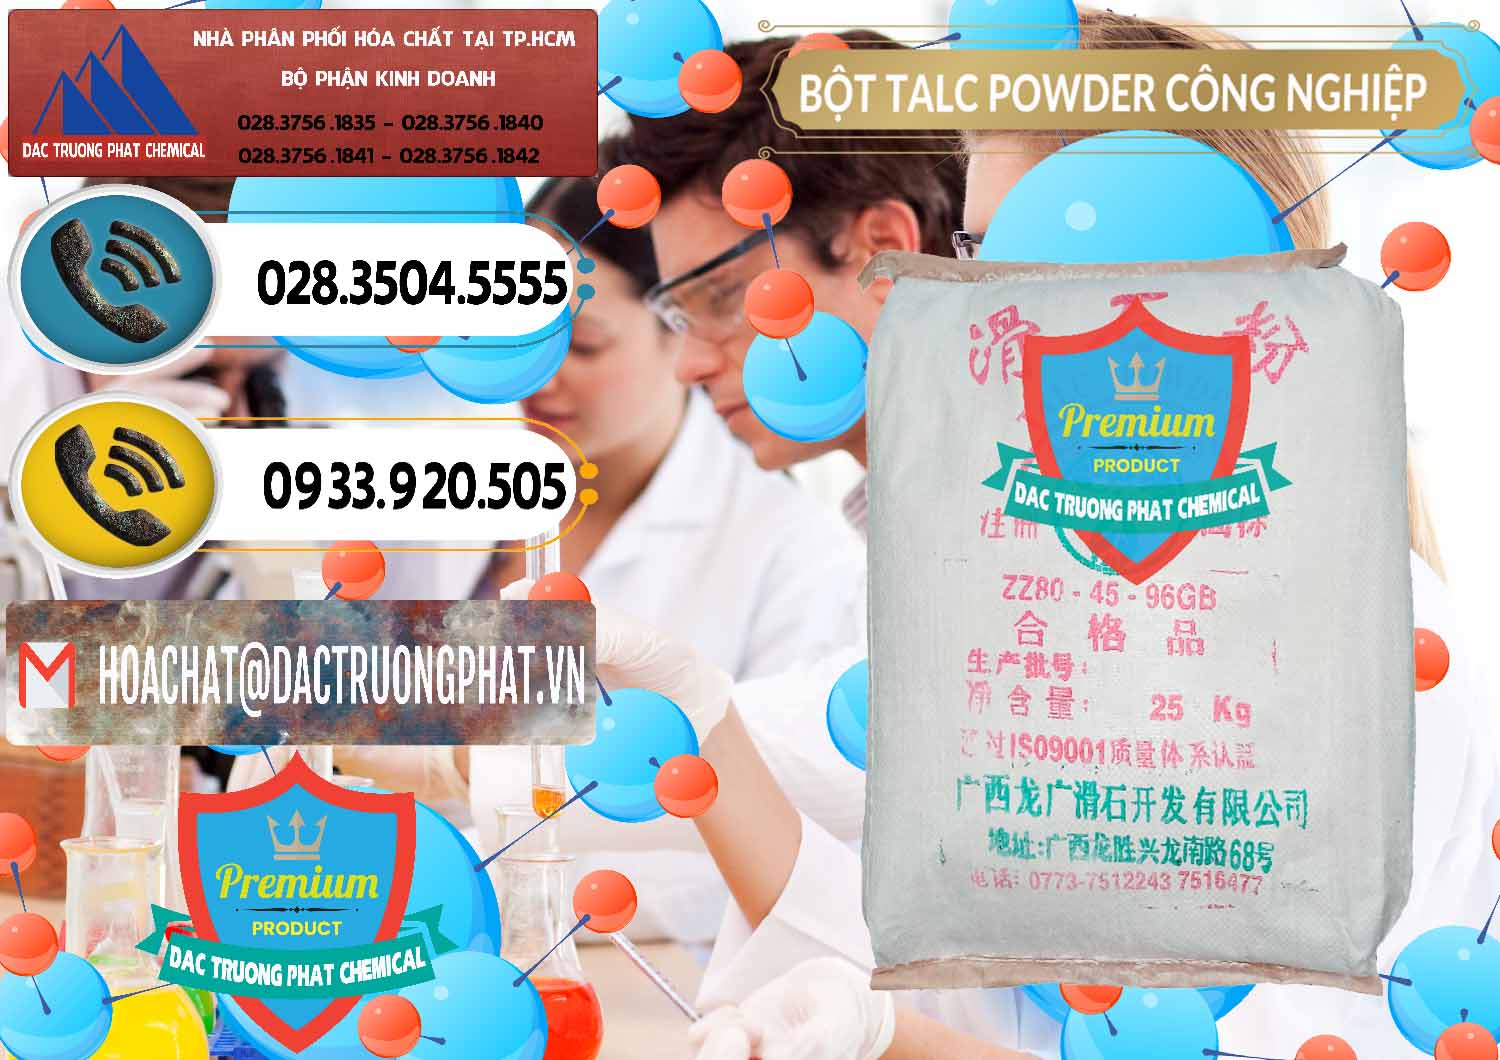 Nhập khẩu _ bán Bột Talc Powder Công Nghiệp Trung Quốc China - 0037 - Phân phối & bán hóa chất tại TP.HCM - hoachatdetnhuom.vn